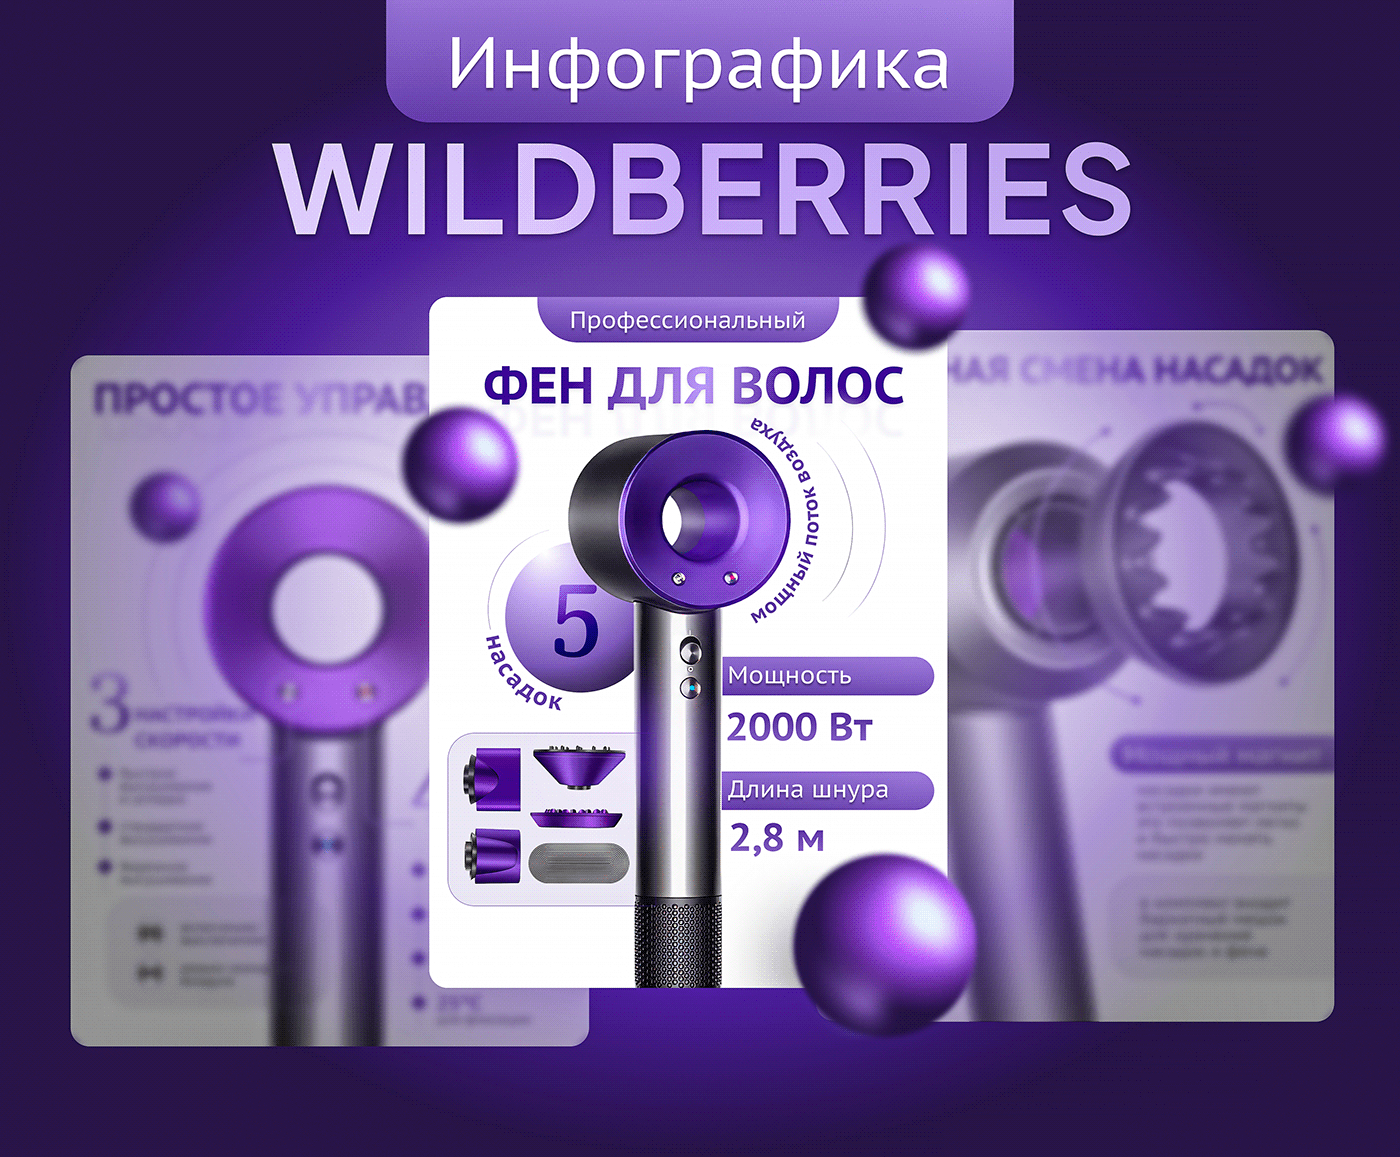 wildberries Web Design  hairdryer product card infographic Market Place инфографика вайлдберриз hairdryer design карточка wildberries Фен для волос